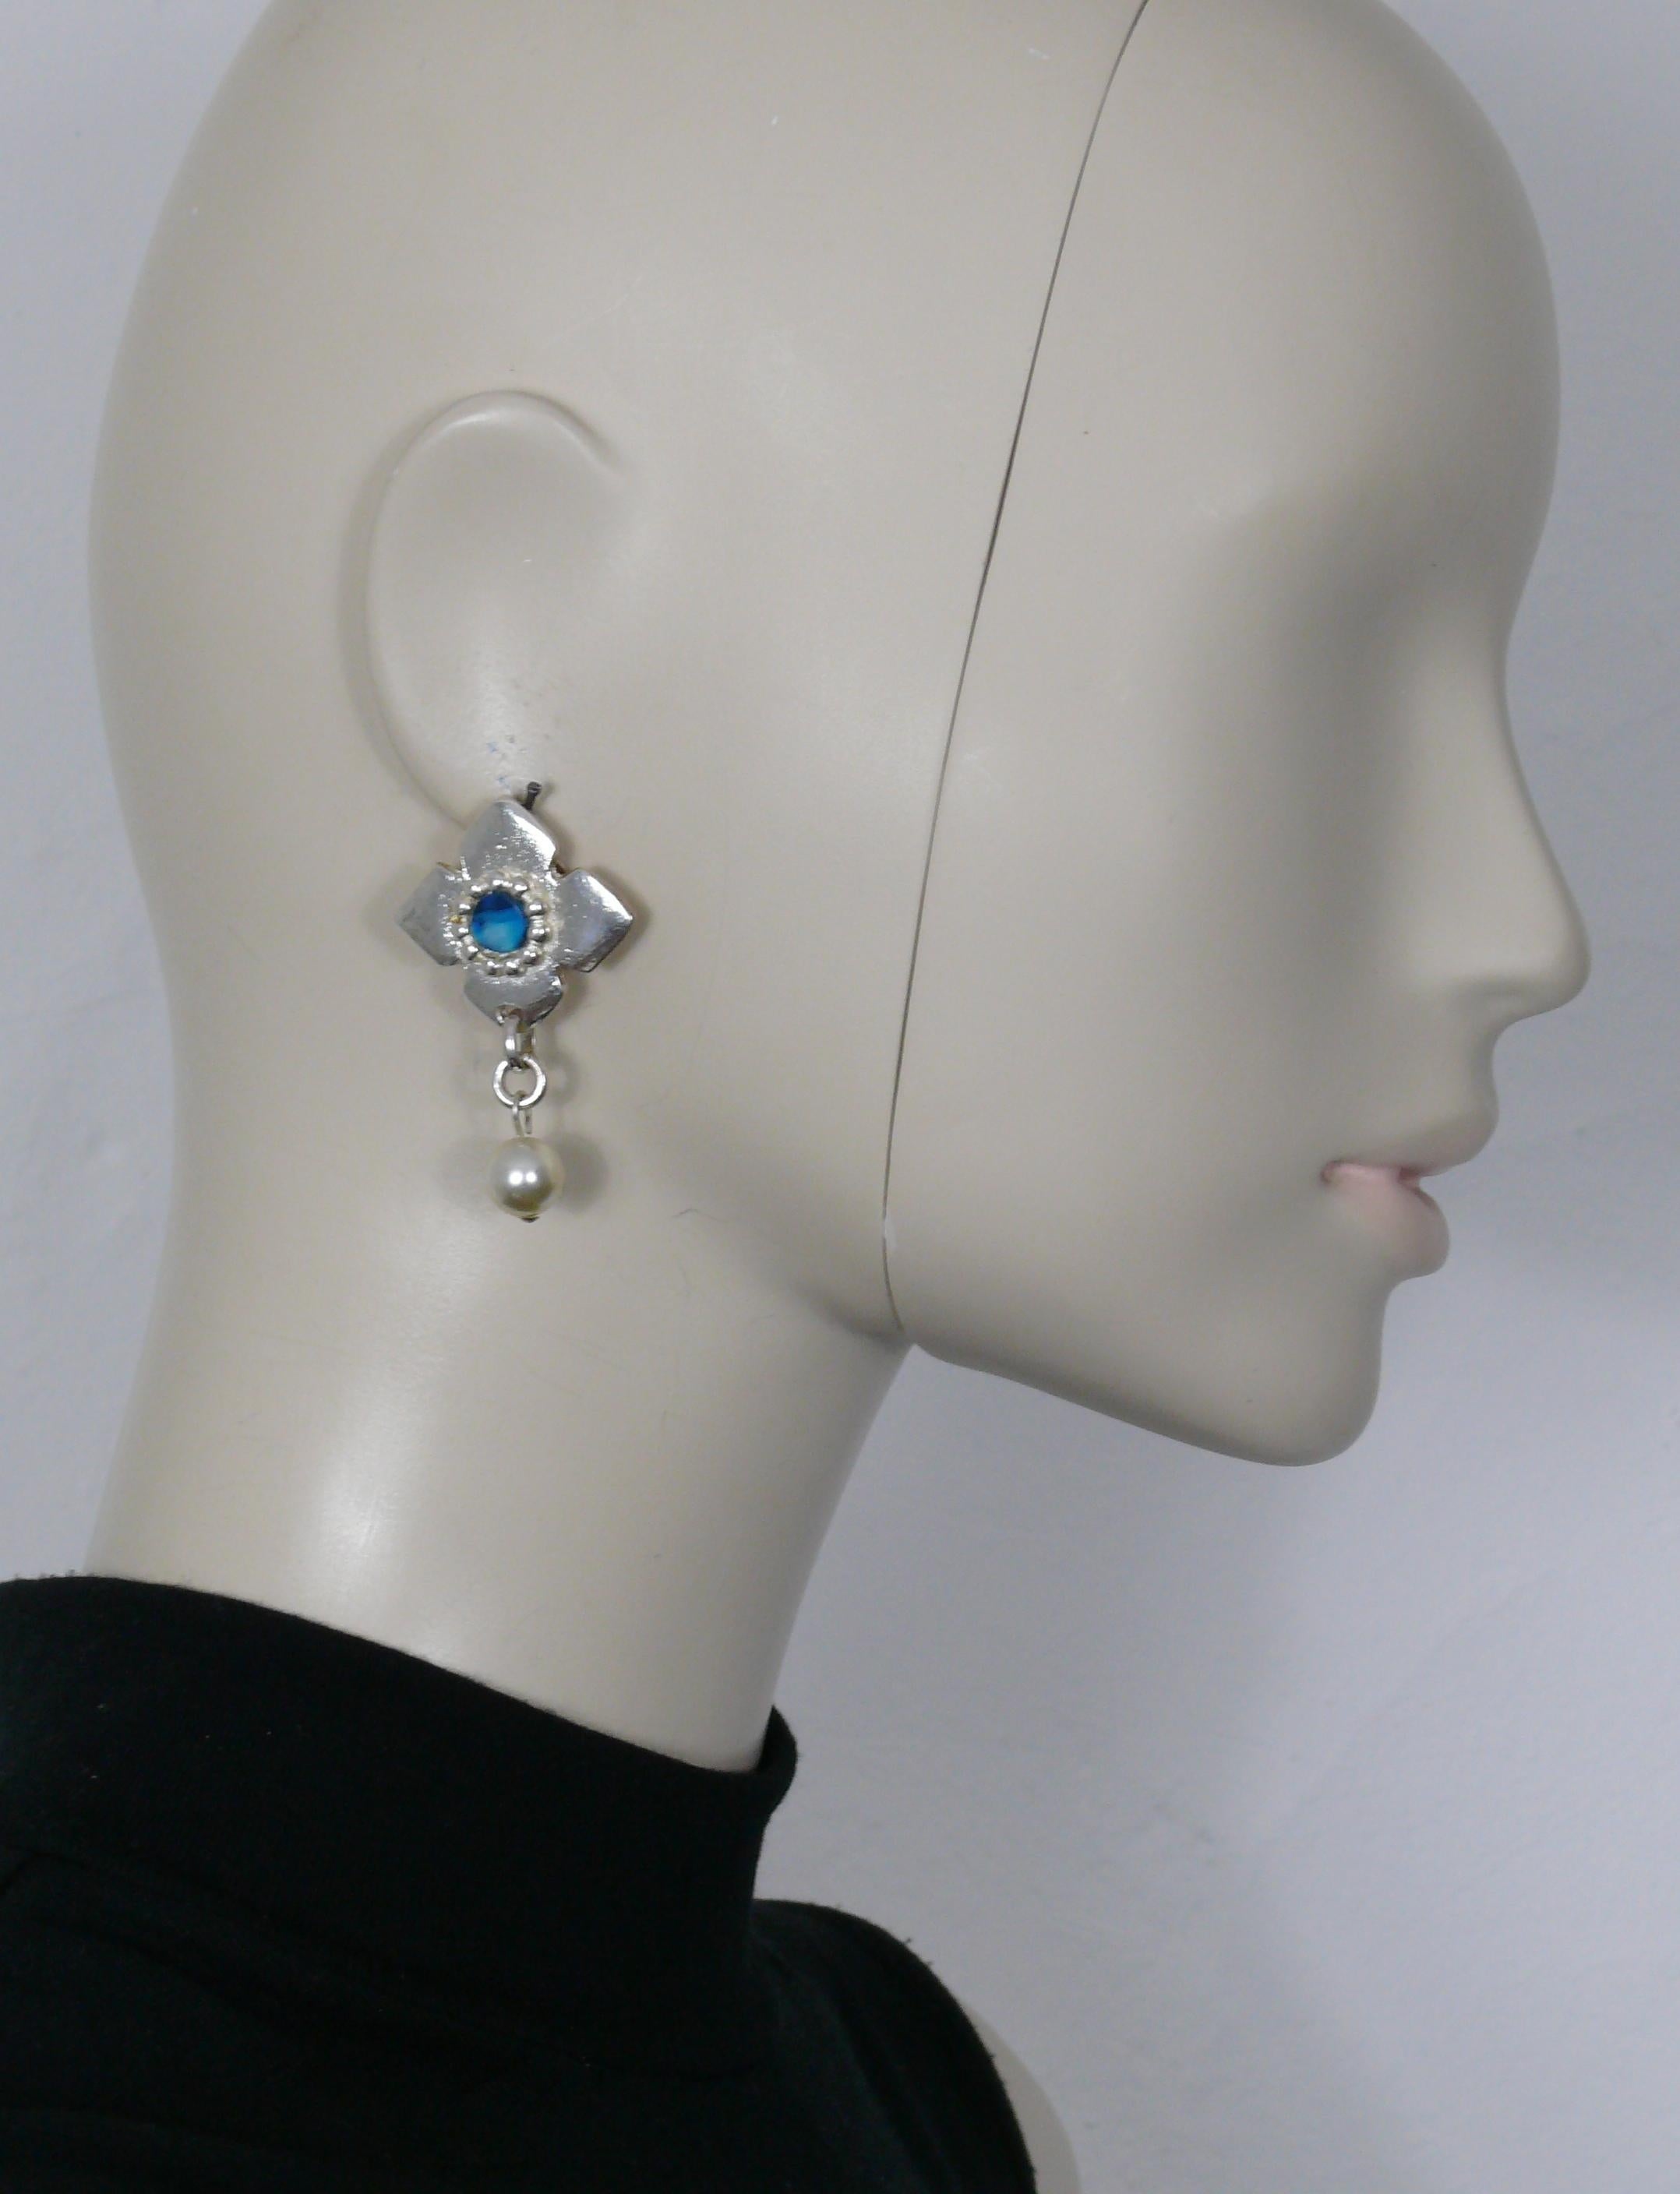 YVES SAINT LAURENT vintage silberfarbene Ohrringe (Clip on) mit einem blau marmorierten Harzkern und einer Kunstperle.

Geprägtes YSL Made in France auf jedem Ohrring.
Bitte beachten Sie, dass nur ein Ohrring auf dem Clip-Back-Pad mit der Prägung